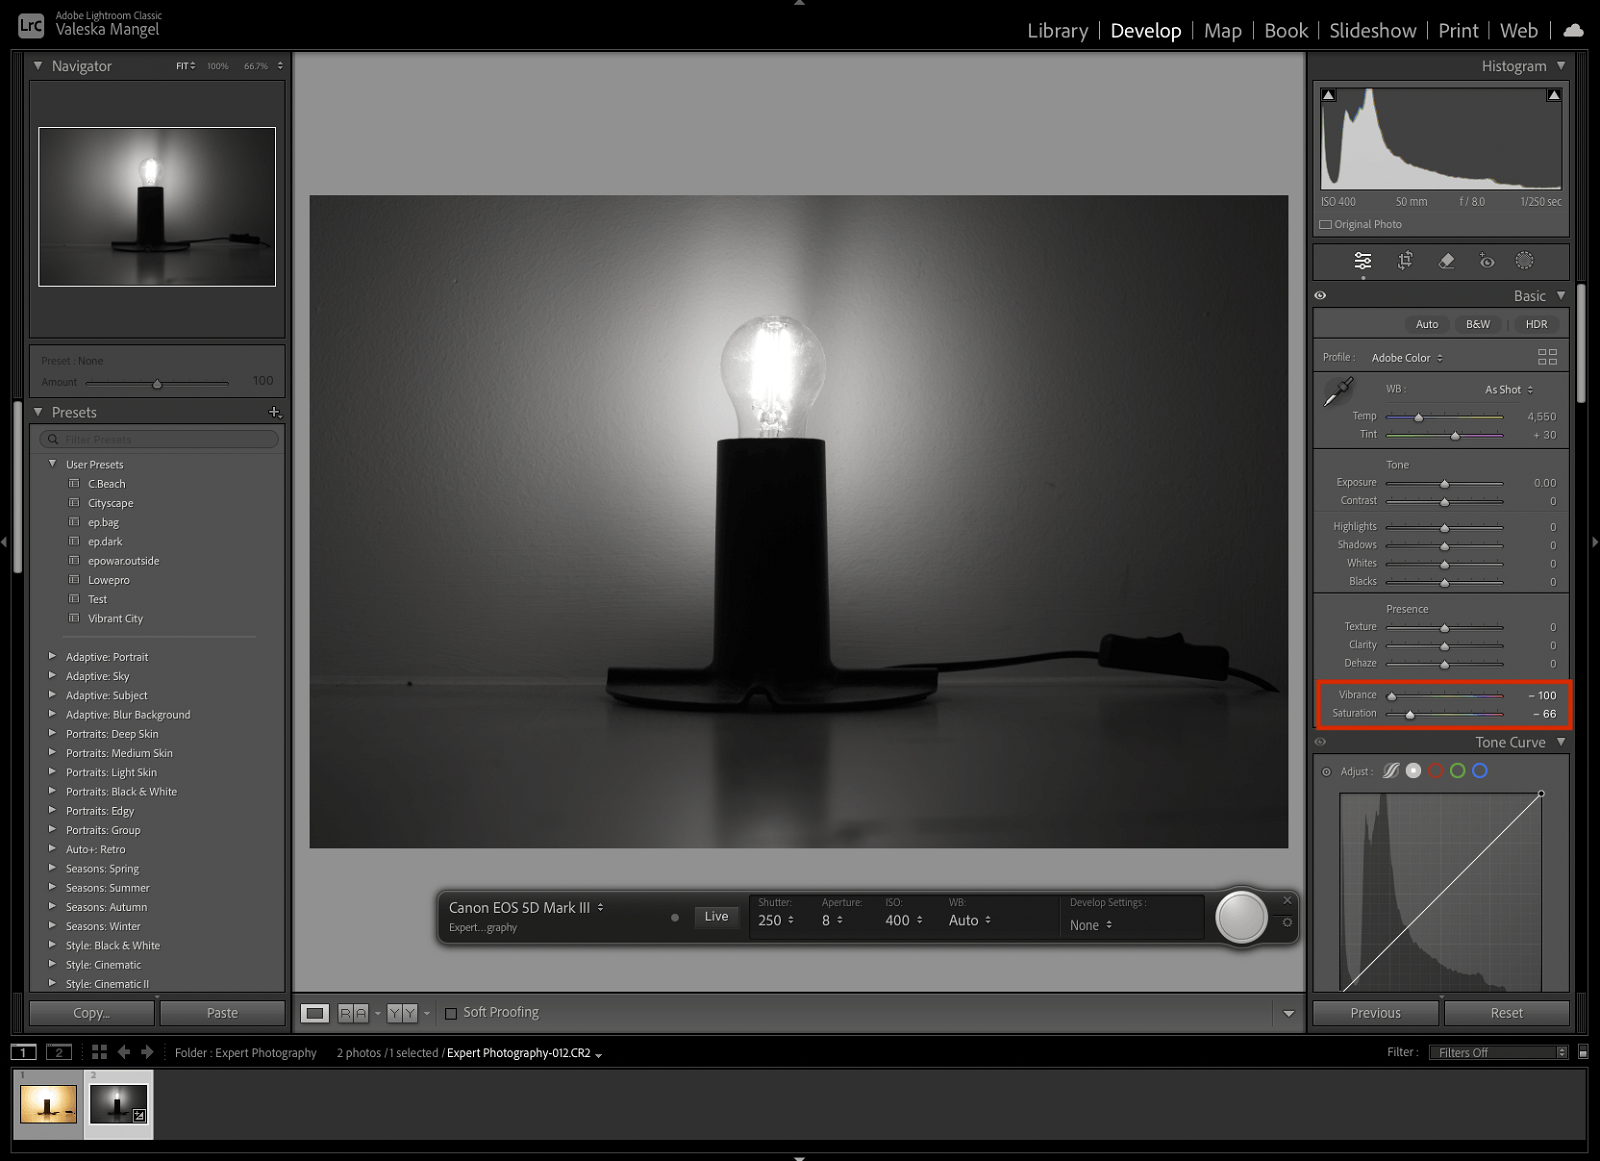 screenshot of lightroom tethered capture adjusting an image during shoot